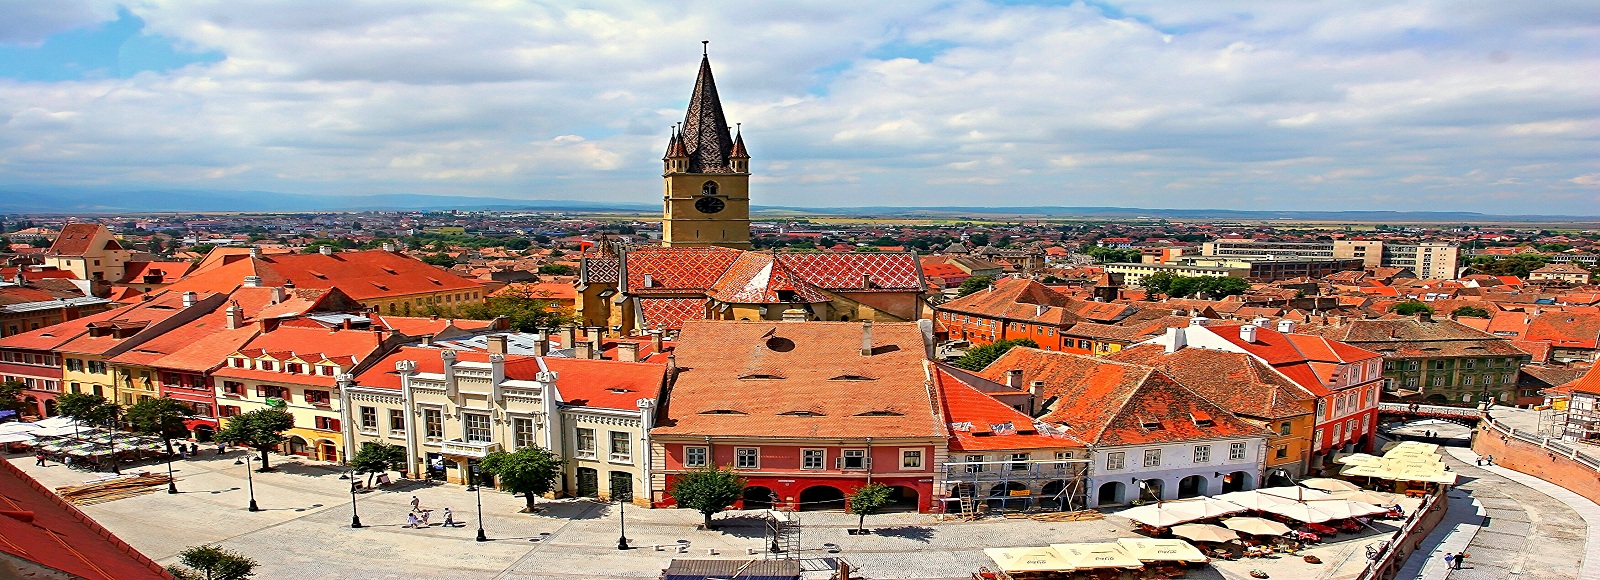 Ofertas de Traslados en Sibiu. Traslados económicos en Sibiu 